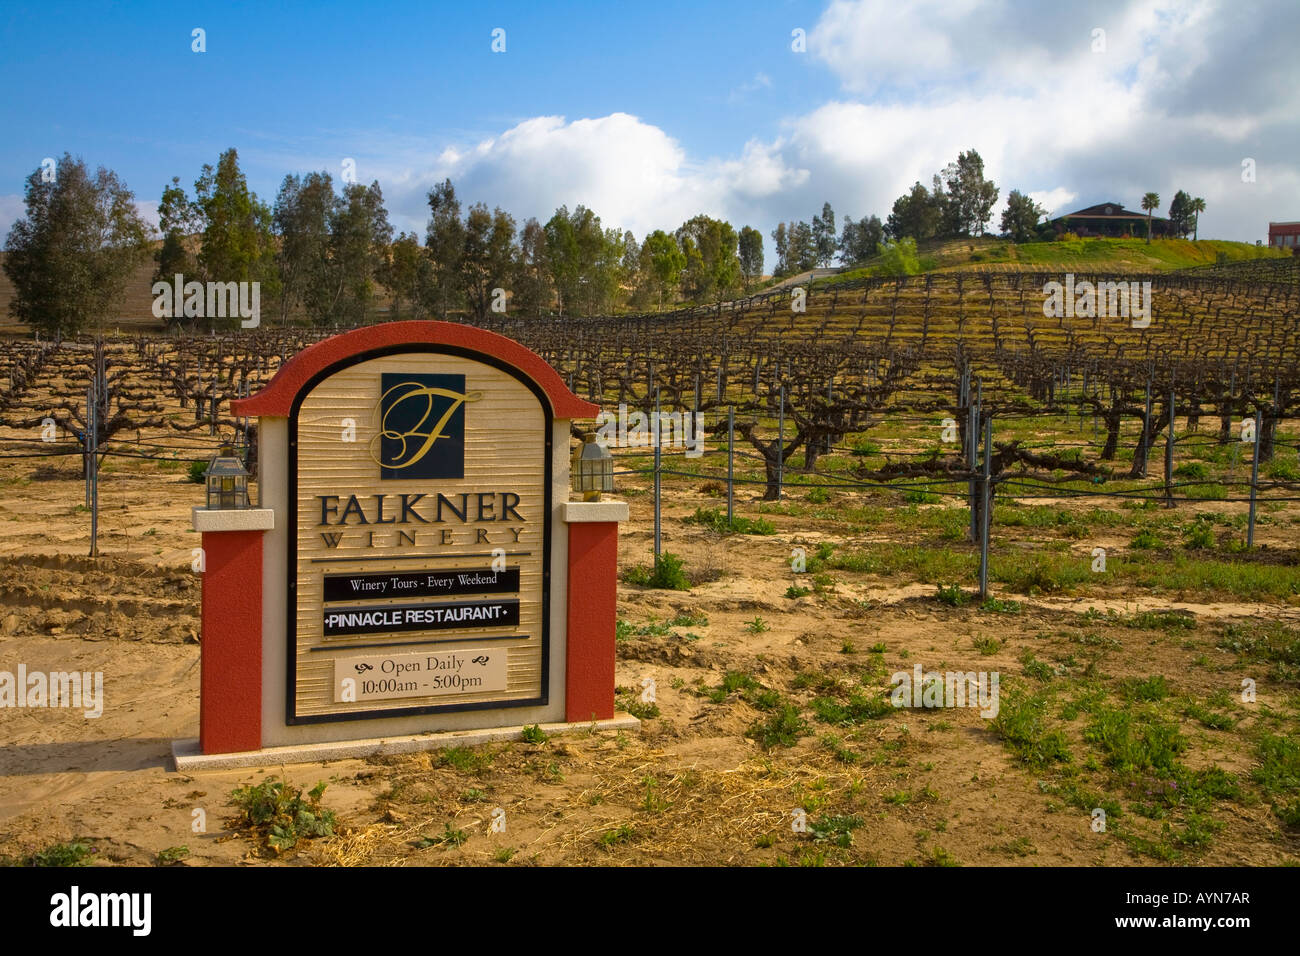 Falkner Winery Temecula dans le Comté de Riverside en Californie USA Banque D'Images